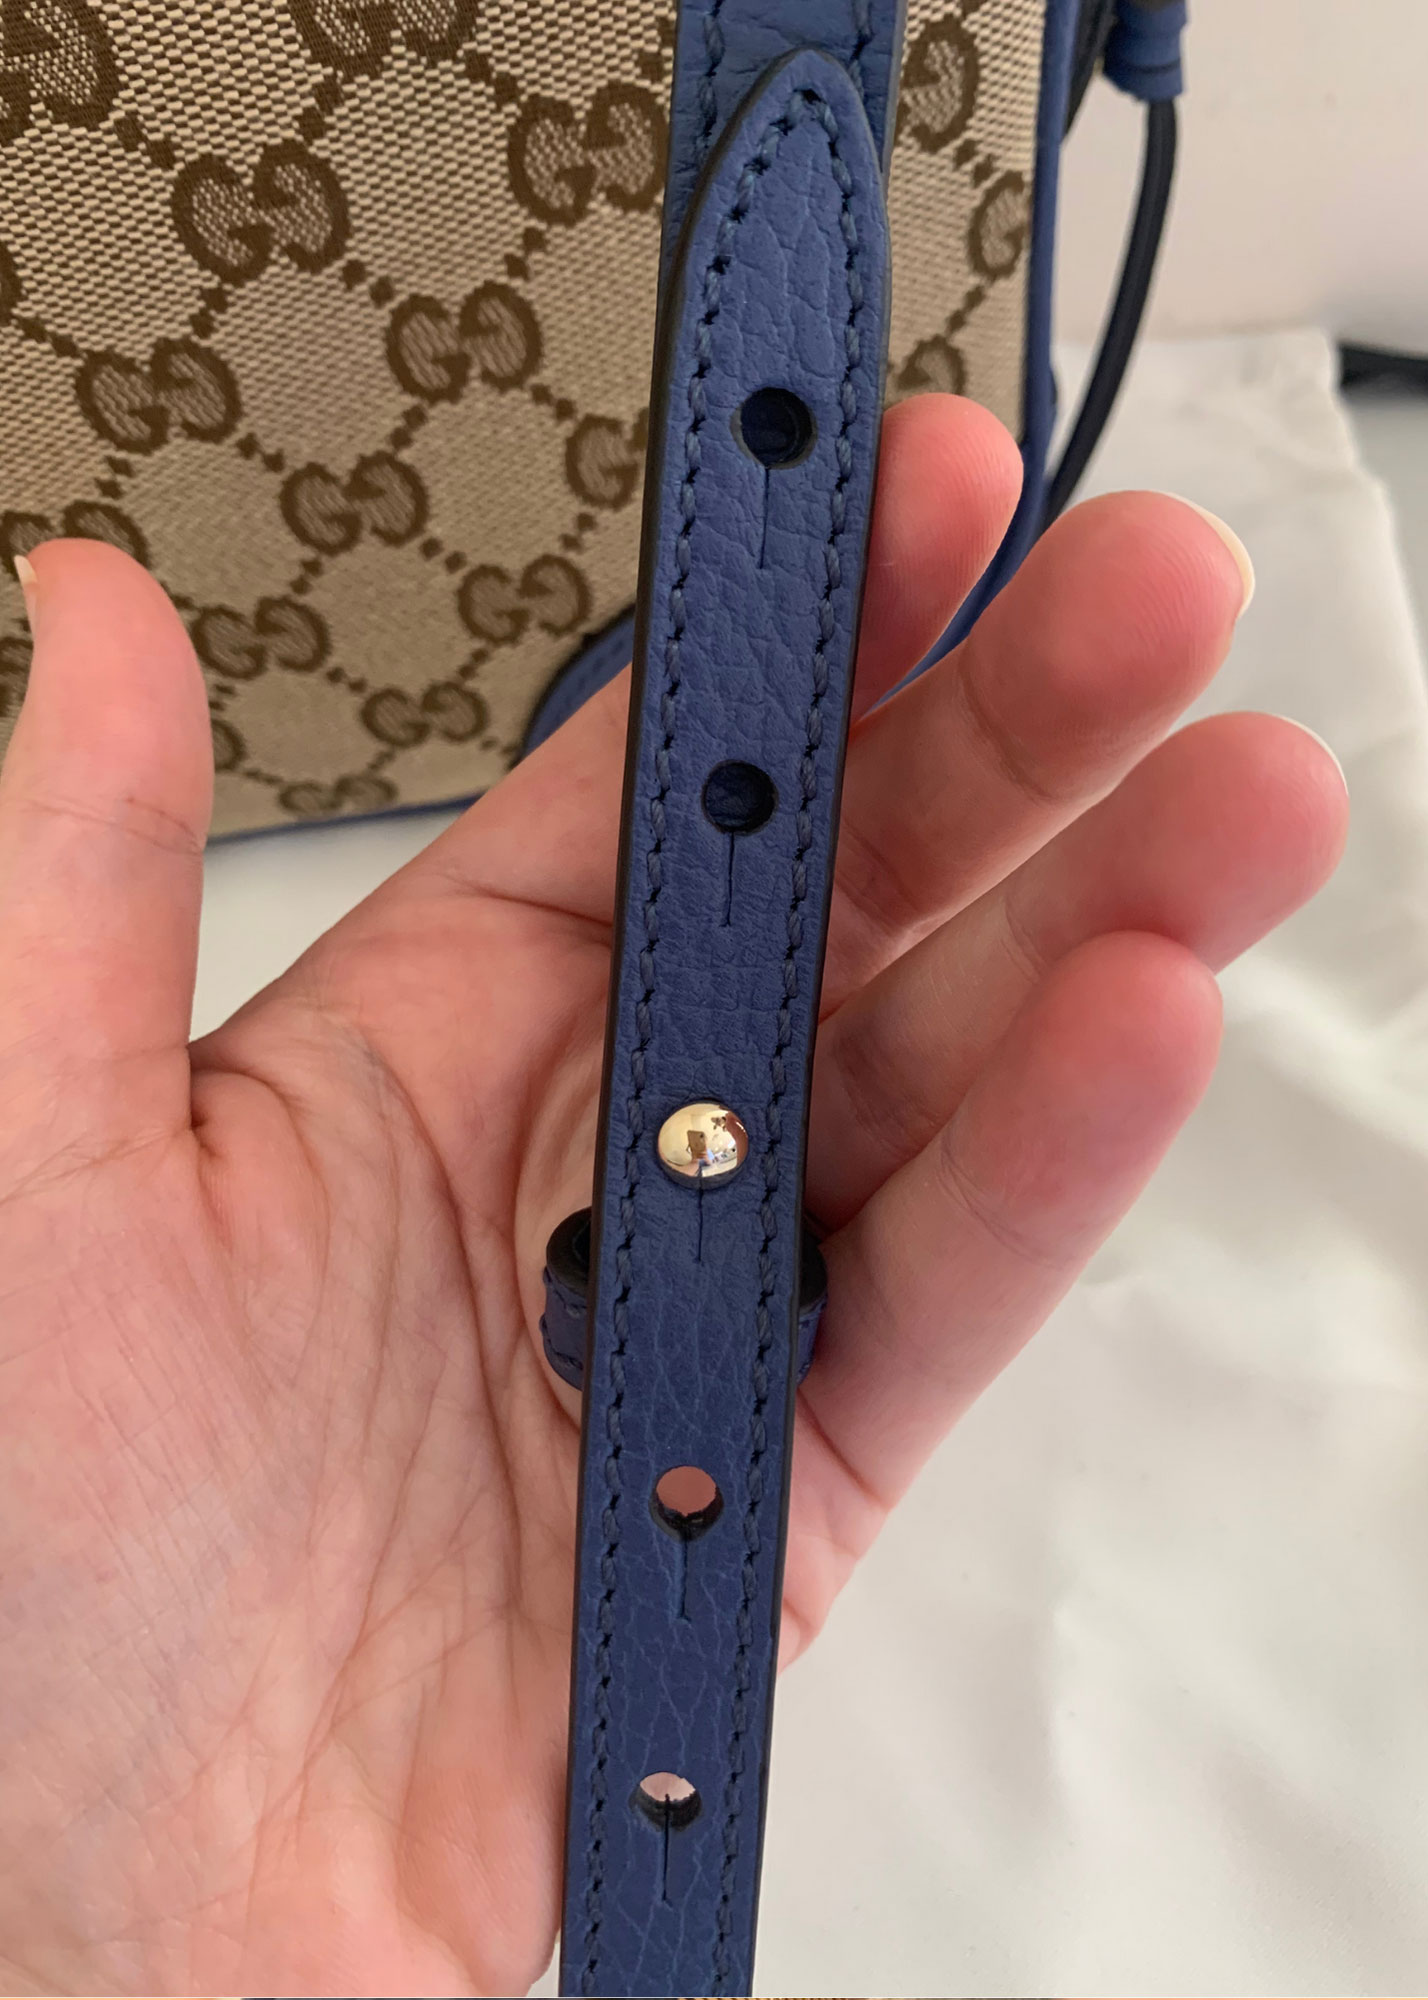 Gucci GG Supreme Bree Camera Crossbody Bag in Caspian Blue NEW - J'adore  Fashion Boutique